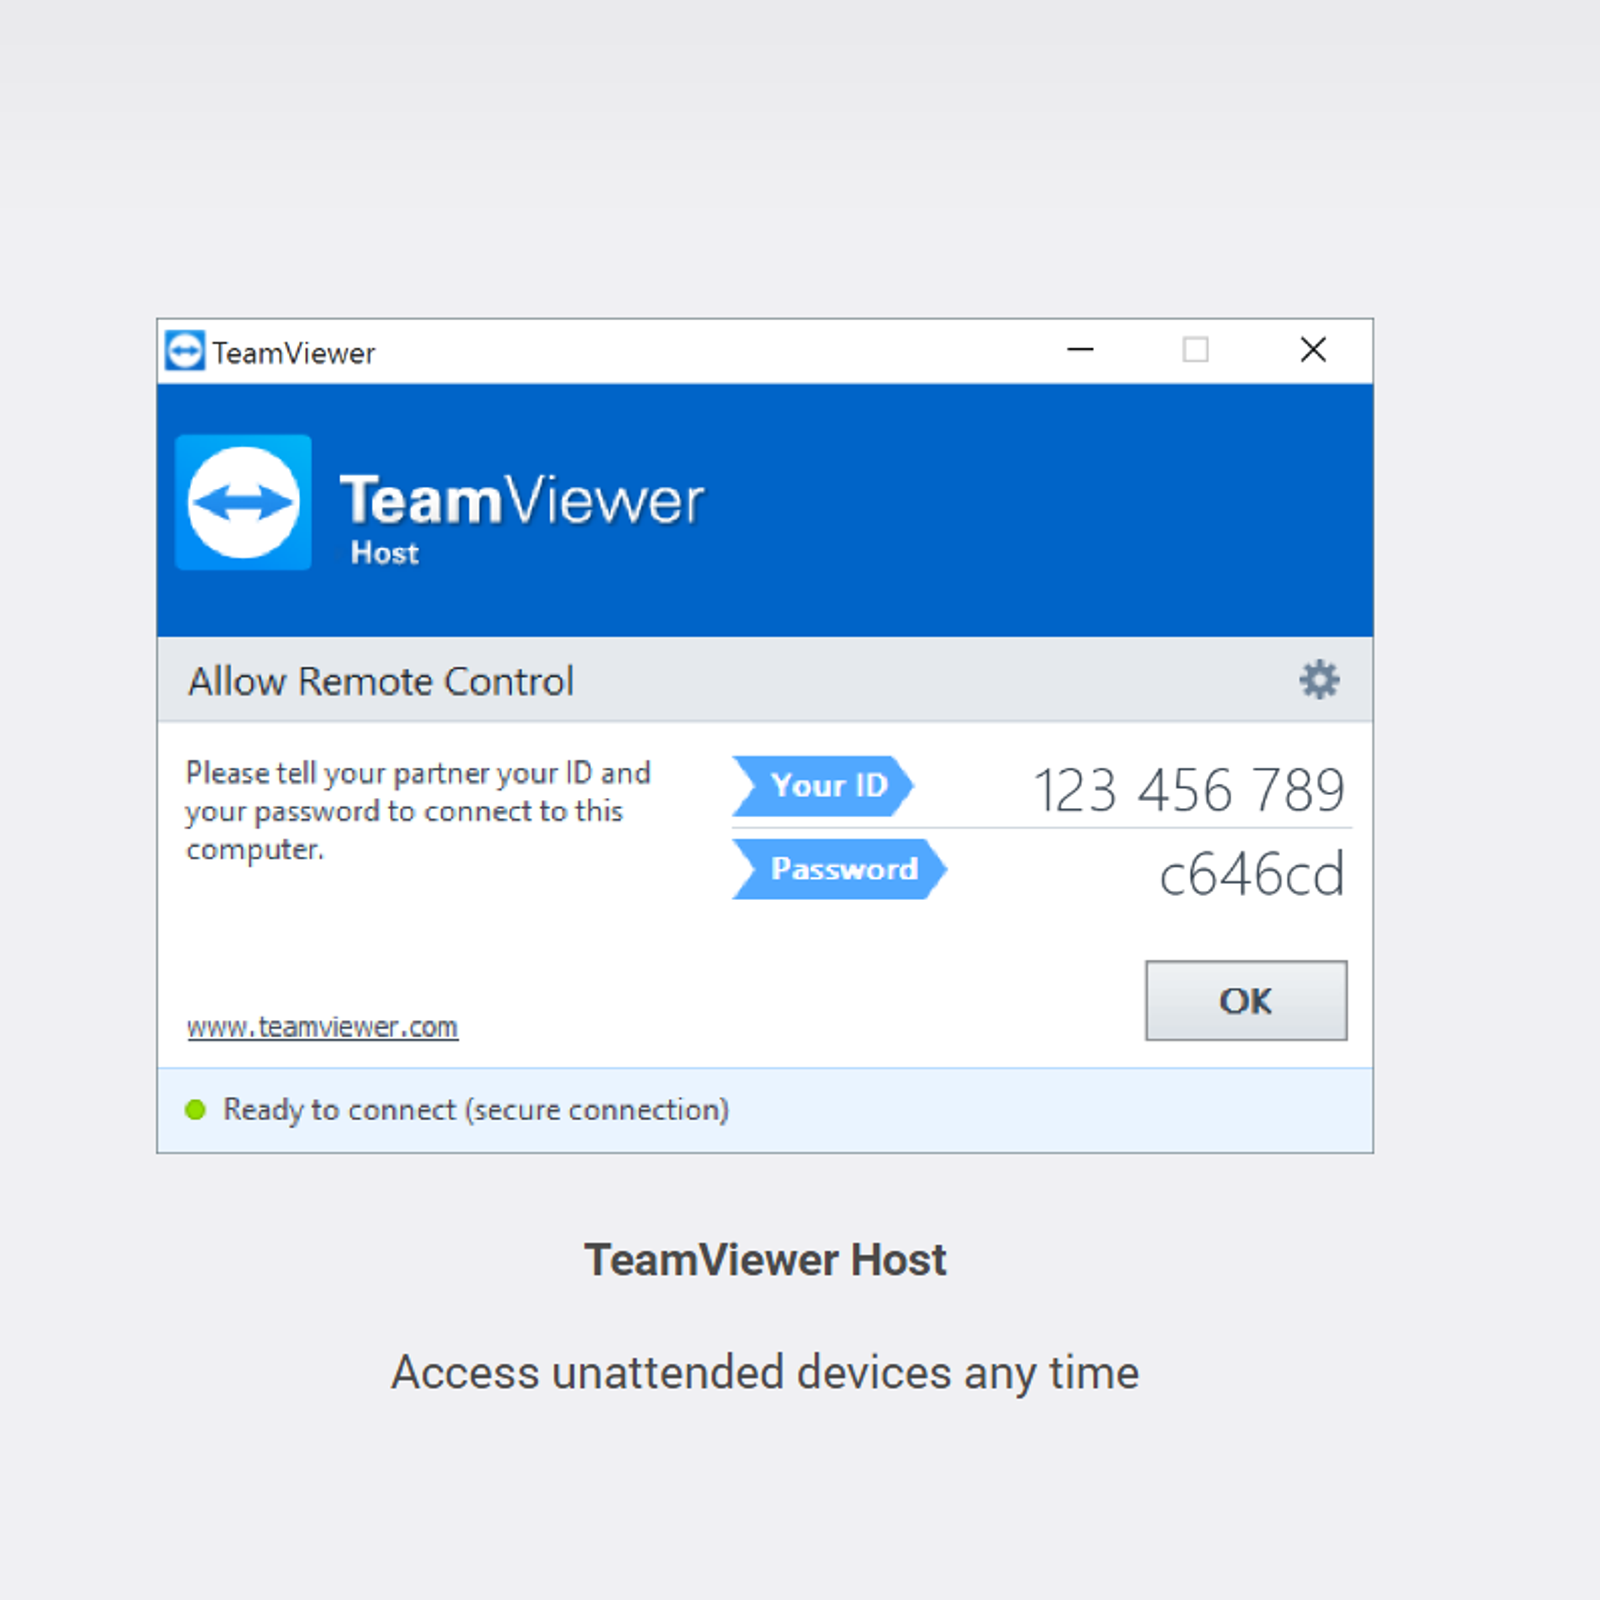 teamviewer similar free software